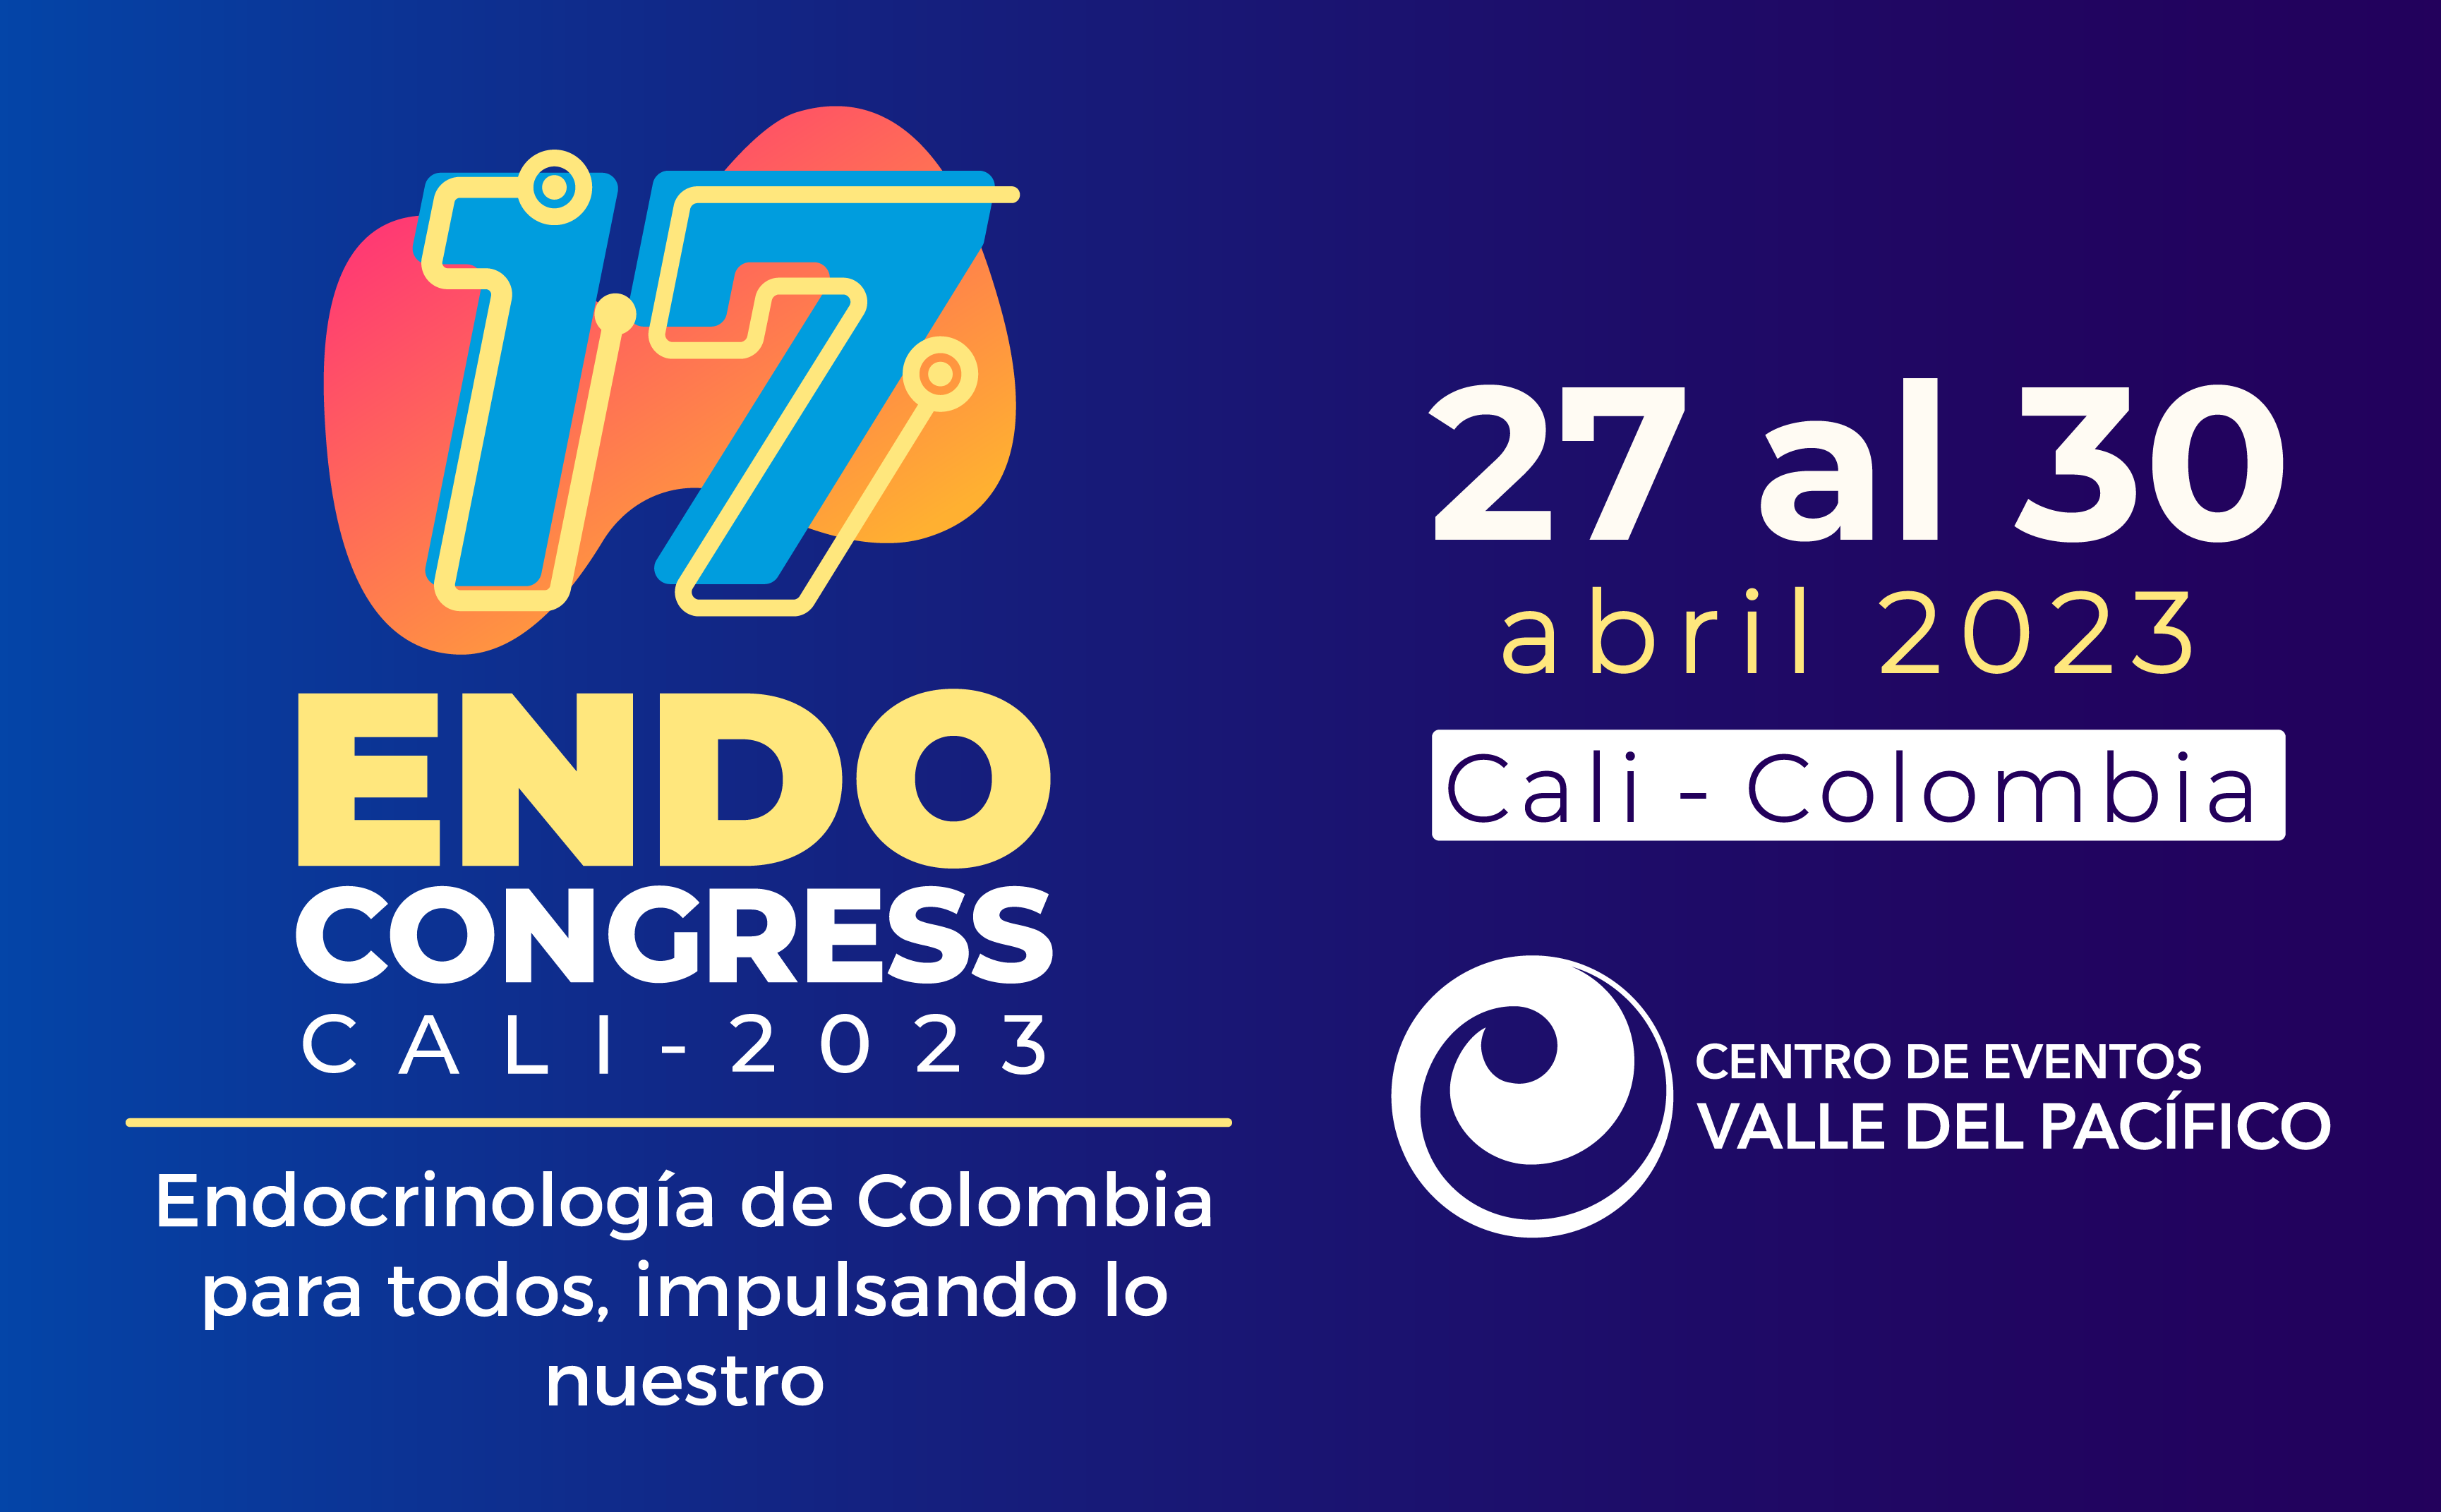 17 Congreso Colombiano de Endocrinología, Diabetes y Metabolismo en Cali, Colombia 2023